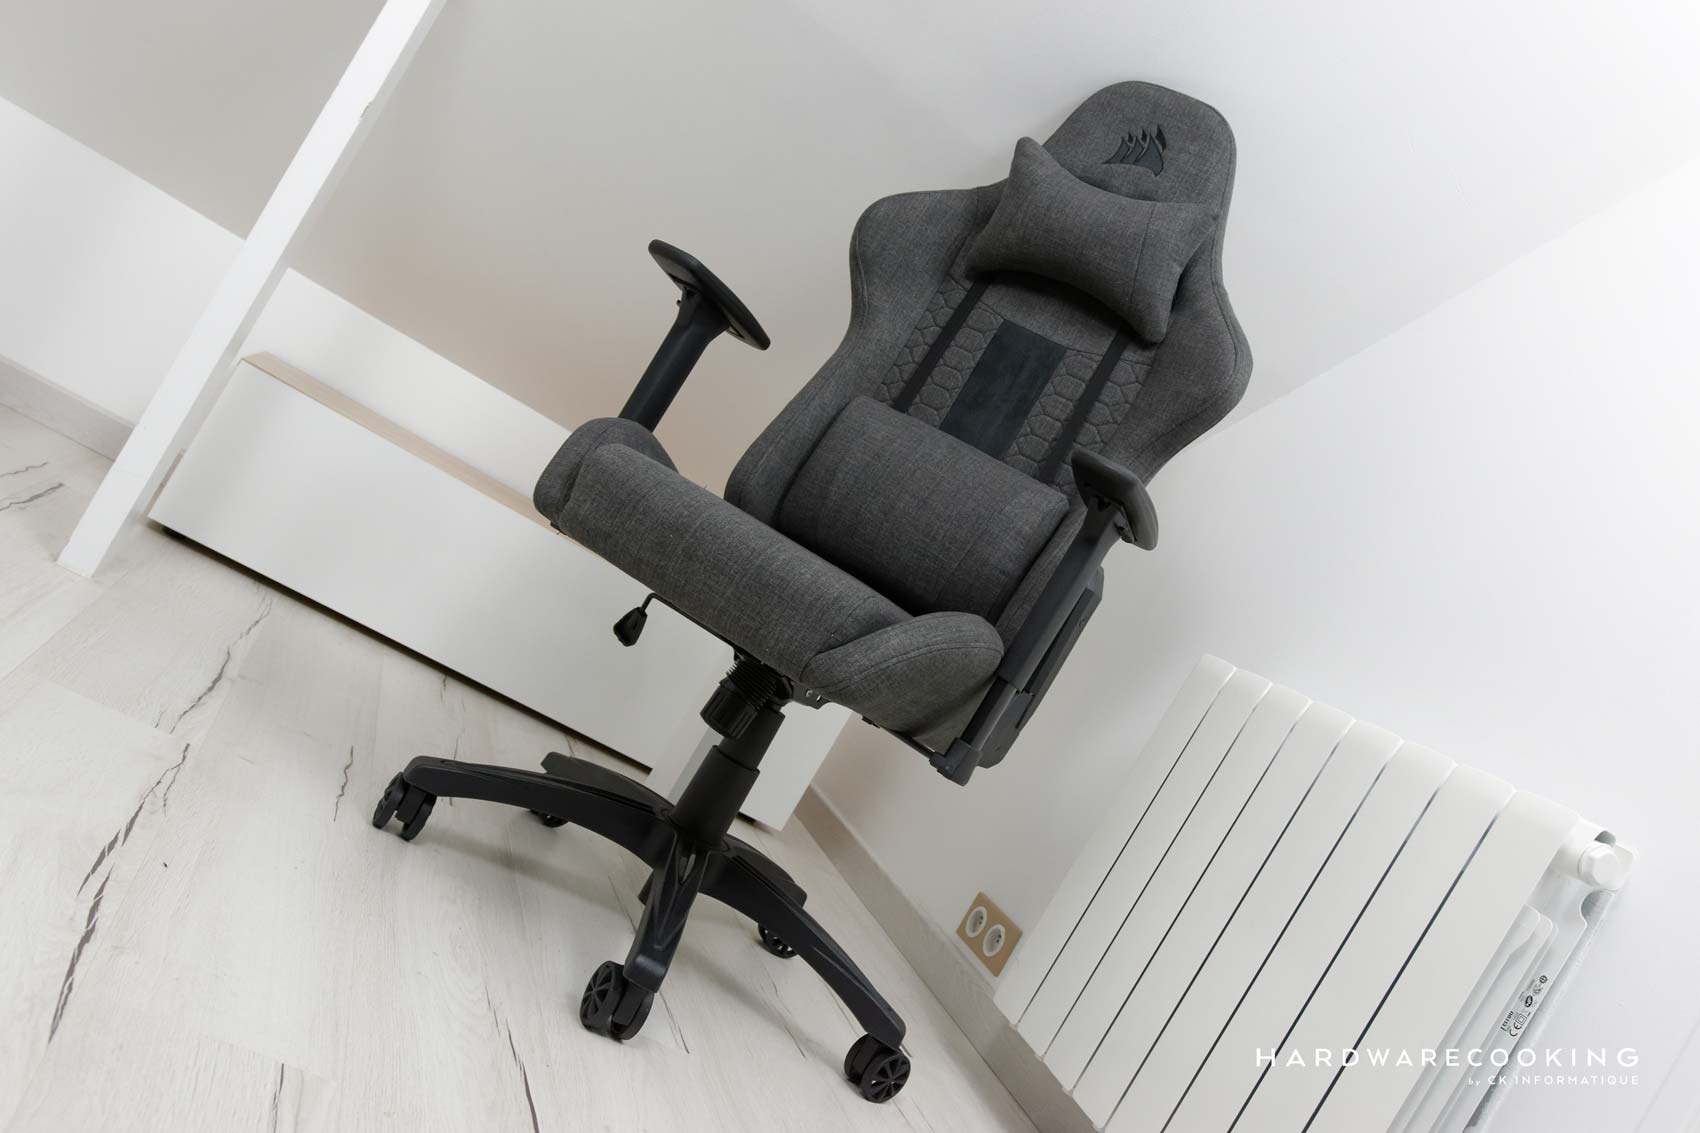 Test : CORSAIR TC100 RELAXED, un bon fauteuil entrée de gamme ?